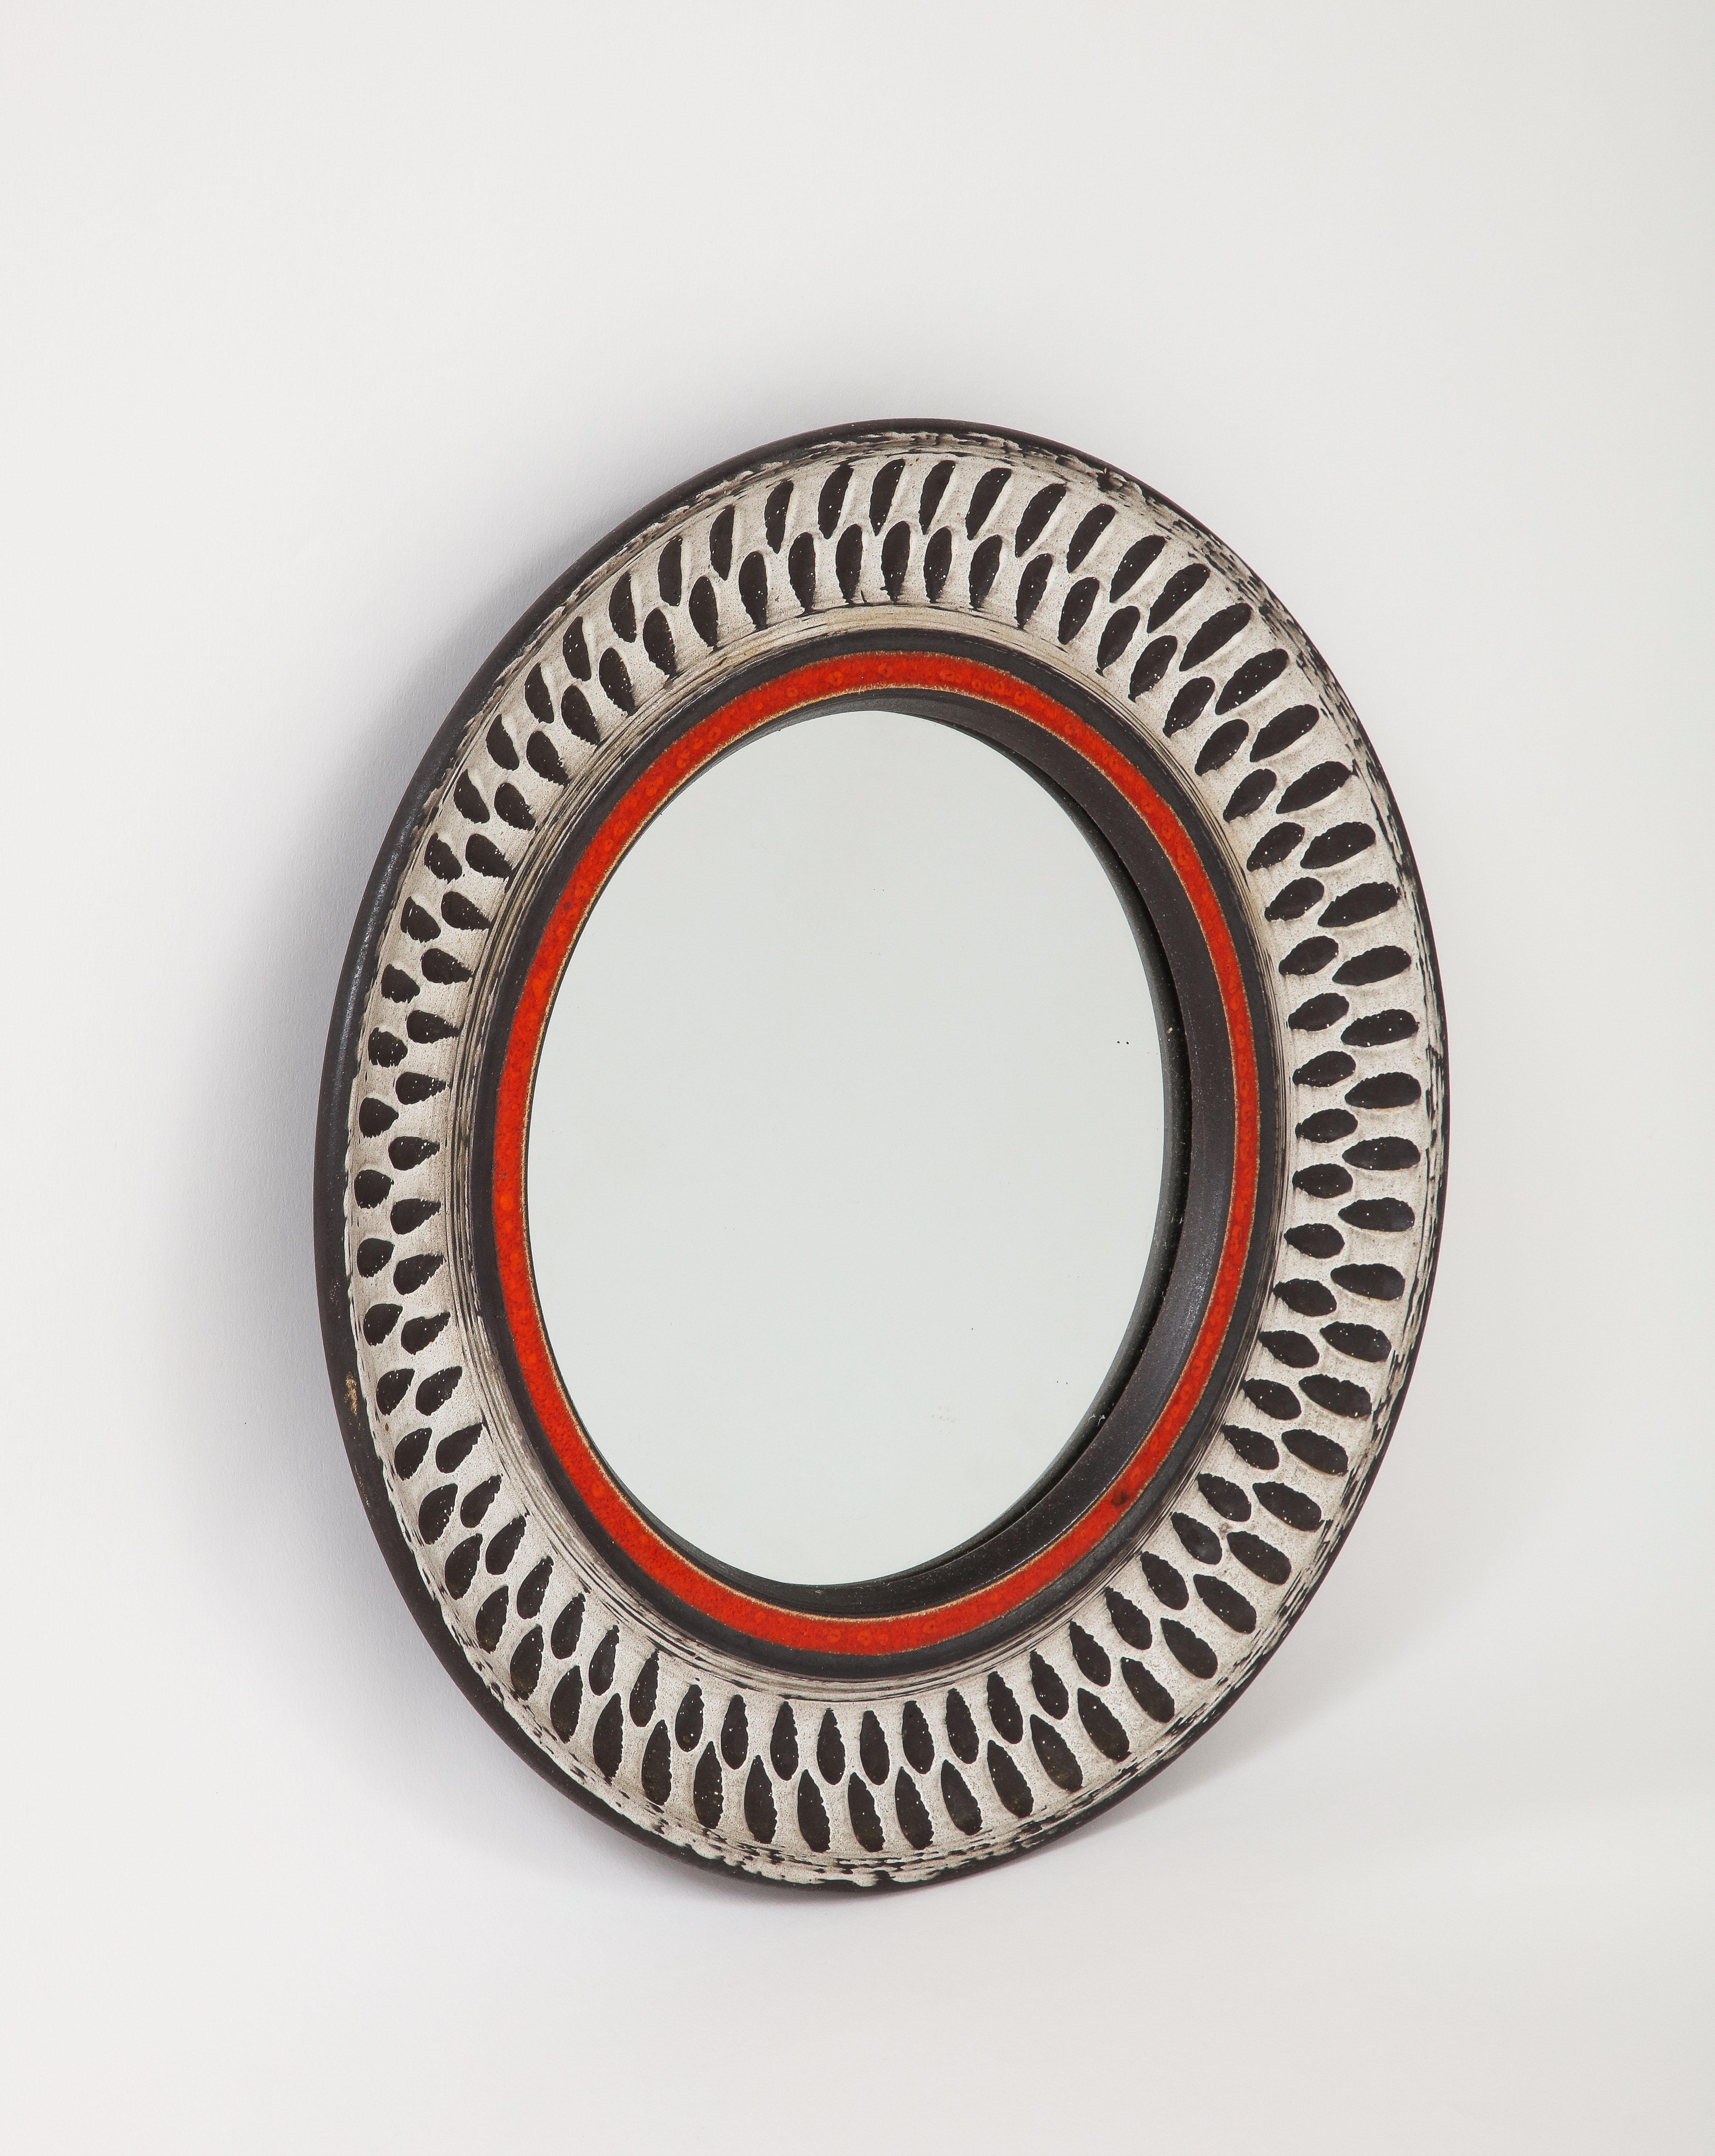 Elegant miroir mural de petite taille de forme ronde. Peut-être de Vallauris. Céramique gravée.
En bon état vintage.